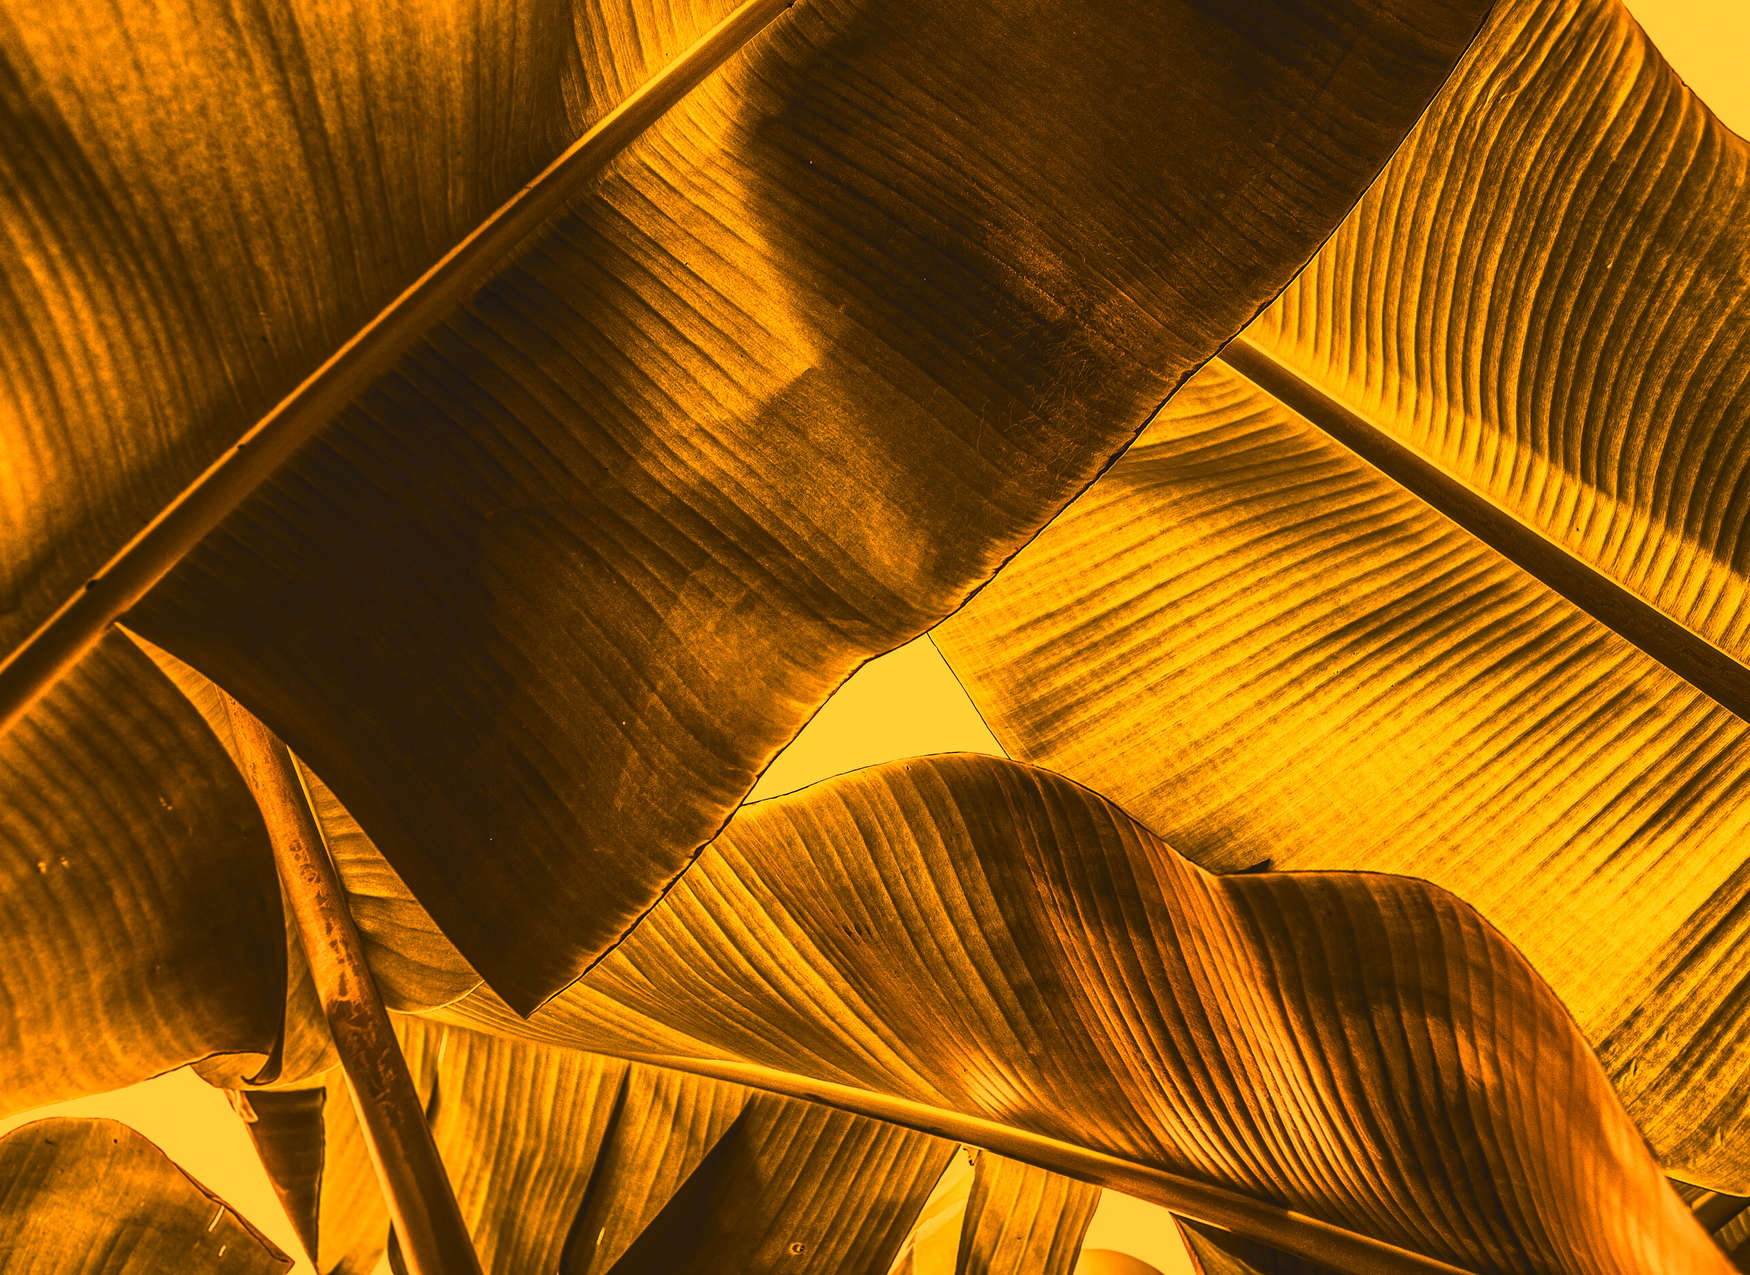             Detalle del cuadro de las hojas tropicales - Naranja, Amarillo
        